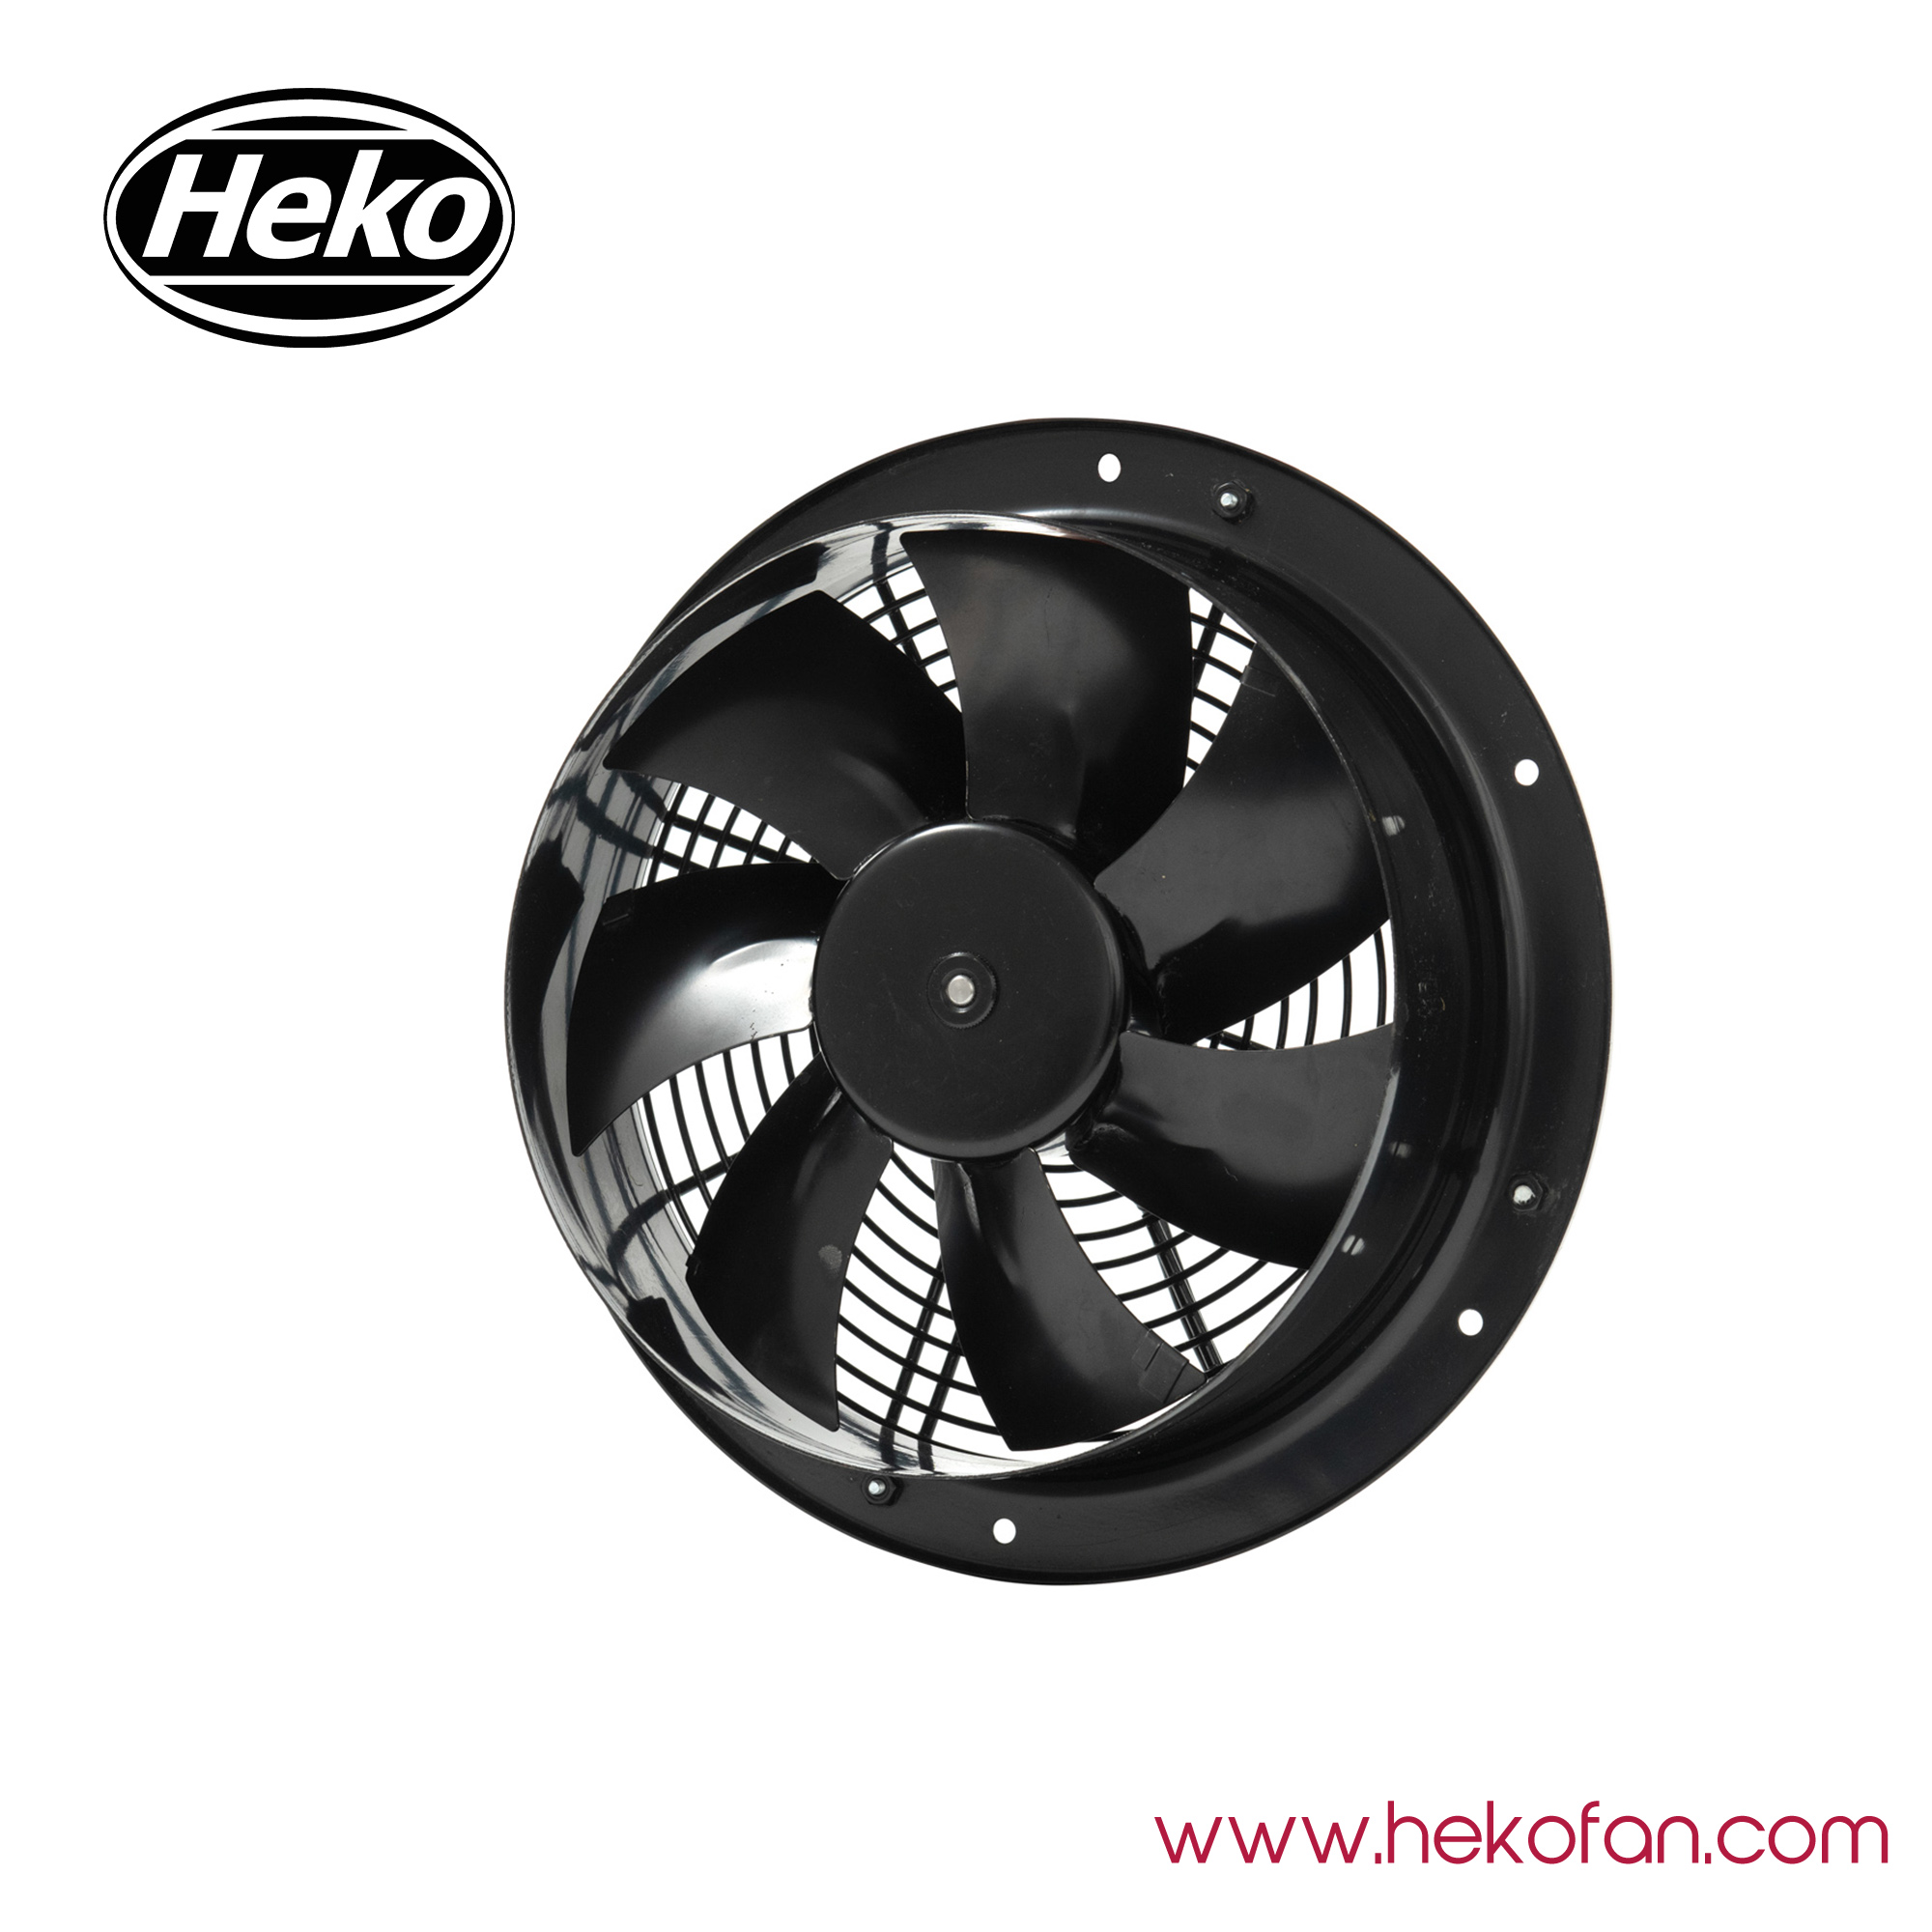 HEKO DC300mm High Speed Heavy Duty Exhaust Axial Fan 